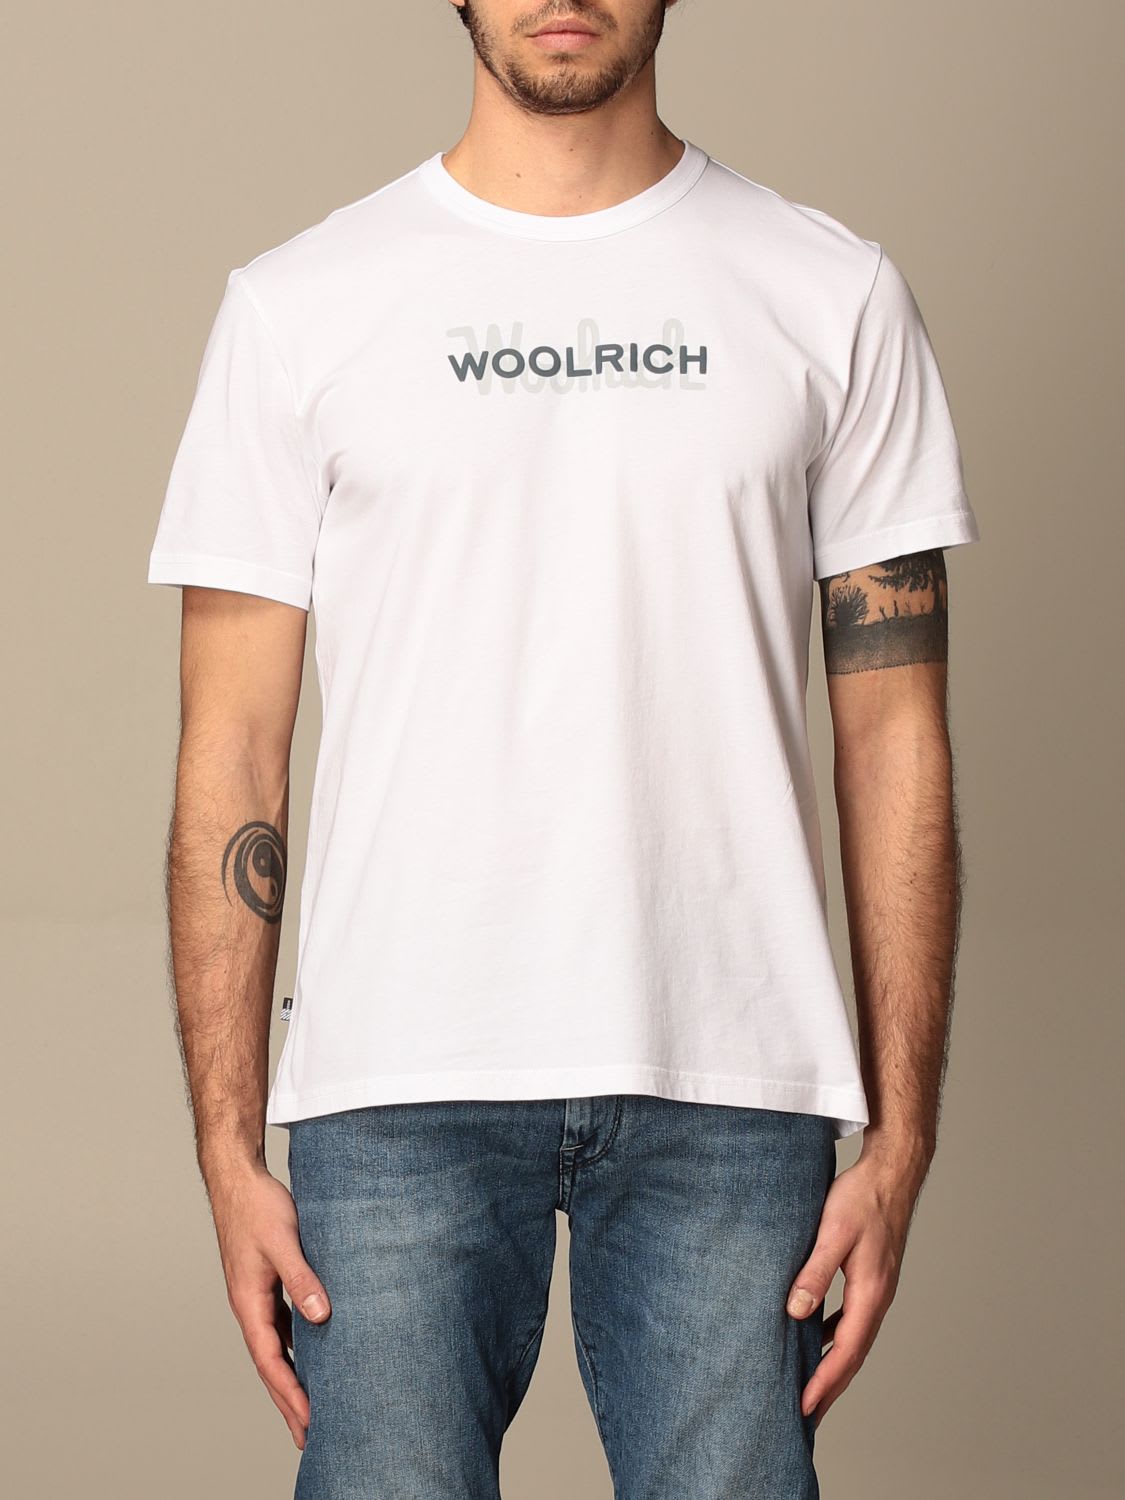 Woolrich T-shirt Woolrich Cotton T-shirt With Logo